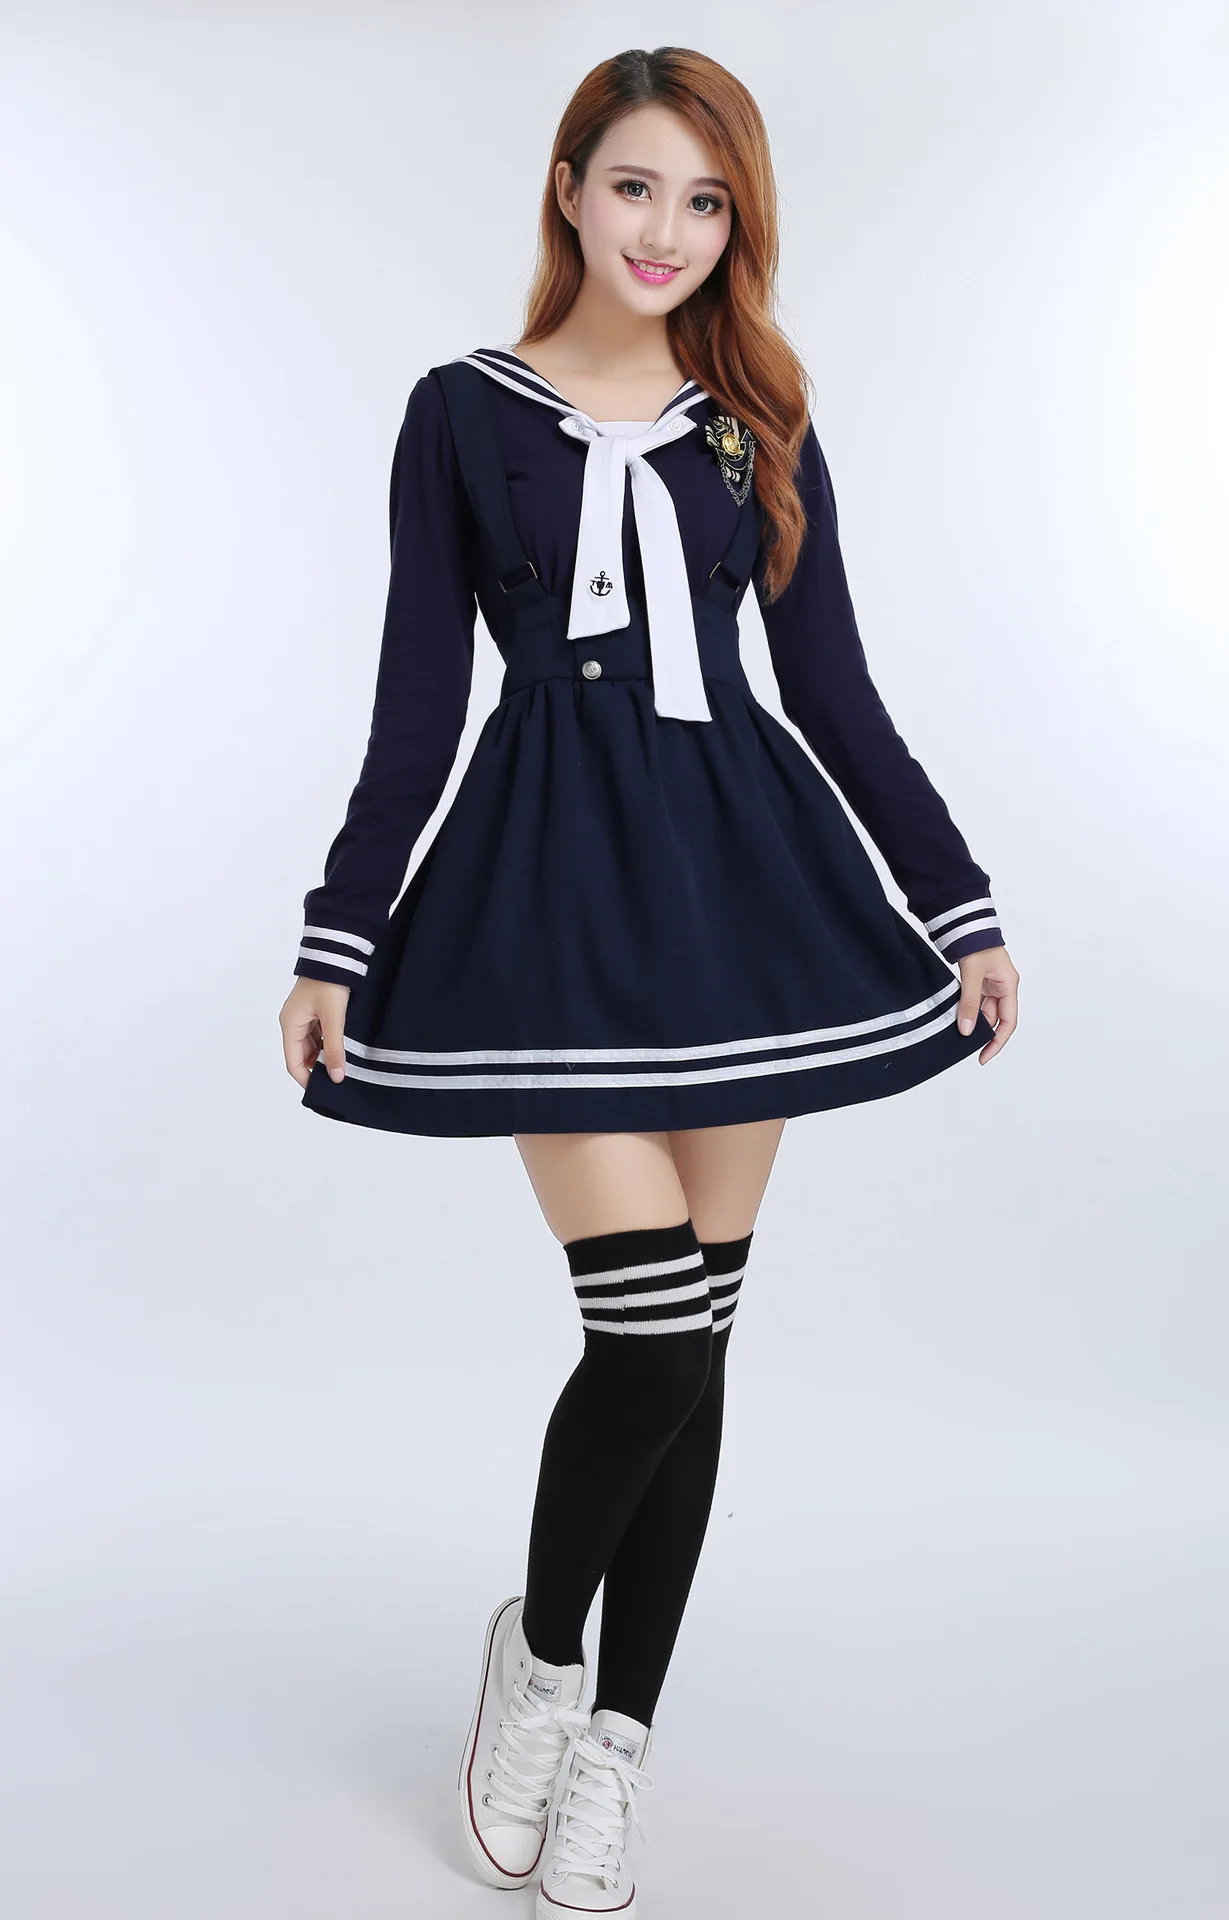 Японская Корейская школьная форма для девочек, Студенческая одежда, костюмы, Белая школьная форма моряка, рубашка+ темно-синяя юбка на бретелях для женщин